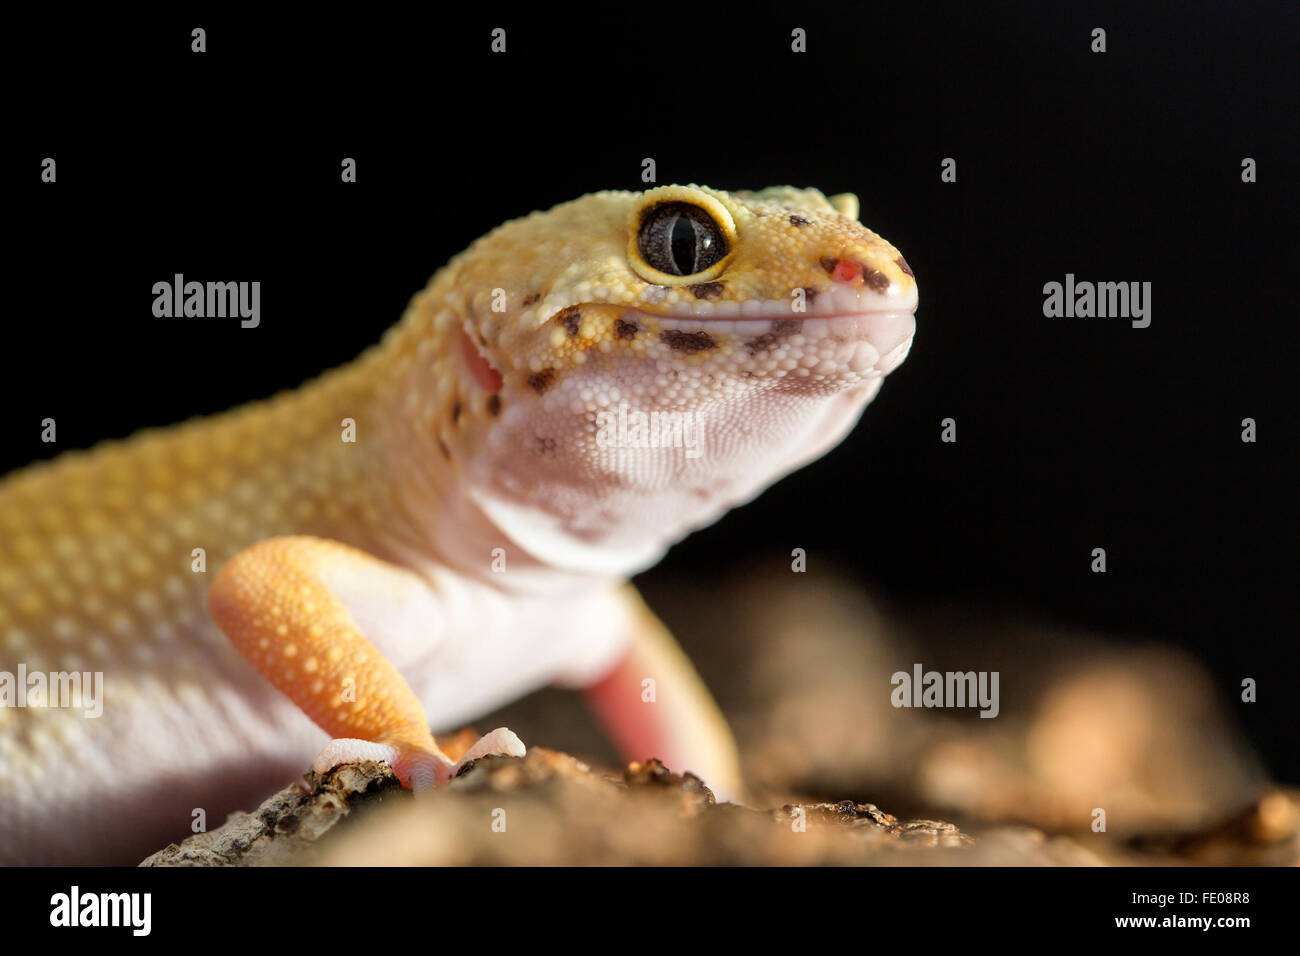 Vue rapprochée frontale d'un gecko léopard, Eublepharis macularius Banque D'Images